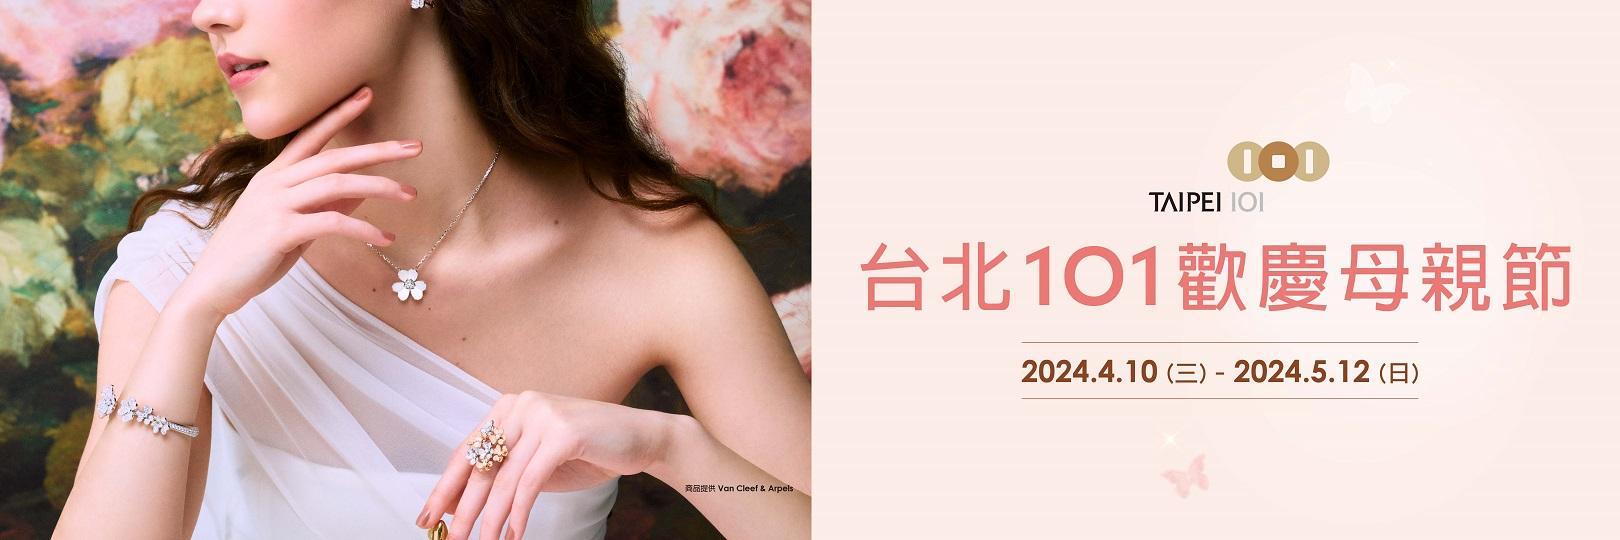 台北101歡慶母親節 刷台新購物回饋最高10%